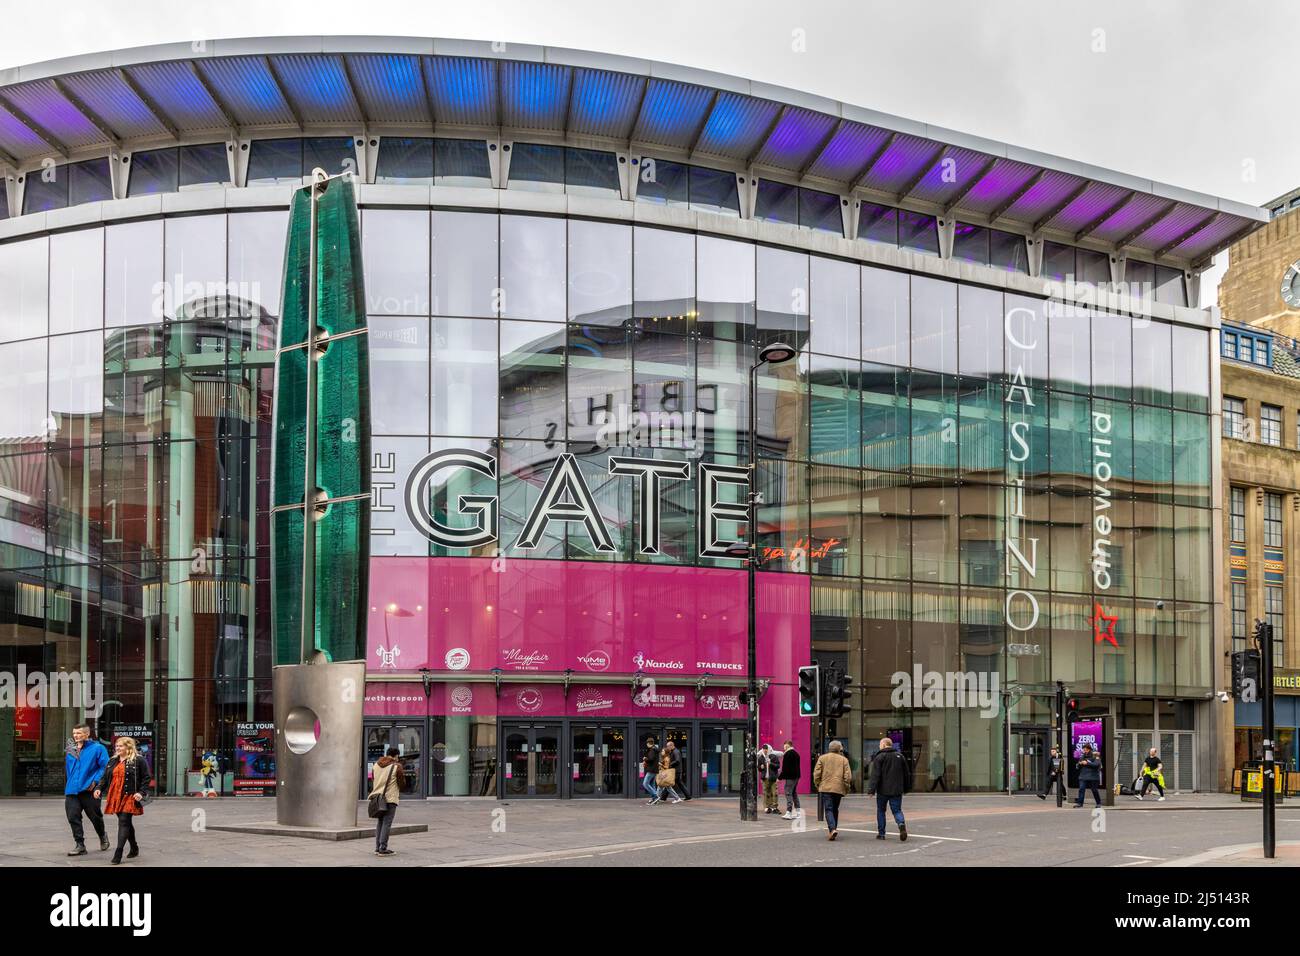 Entrée au centre commercial The Gate, Newcastle upon Tyne, Royaume-Uni Banque D'Images